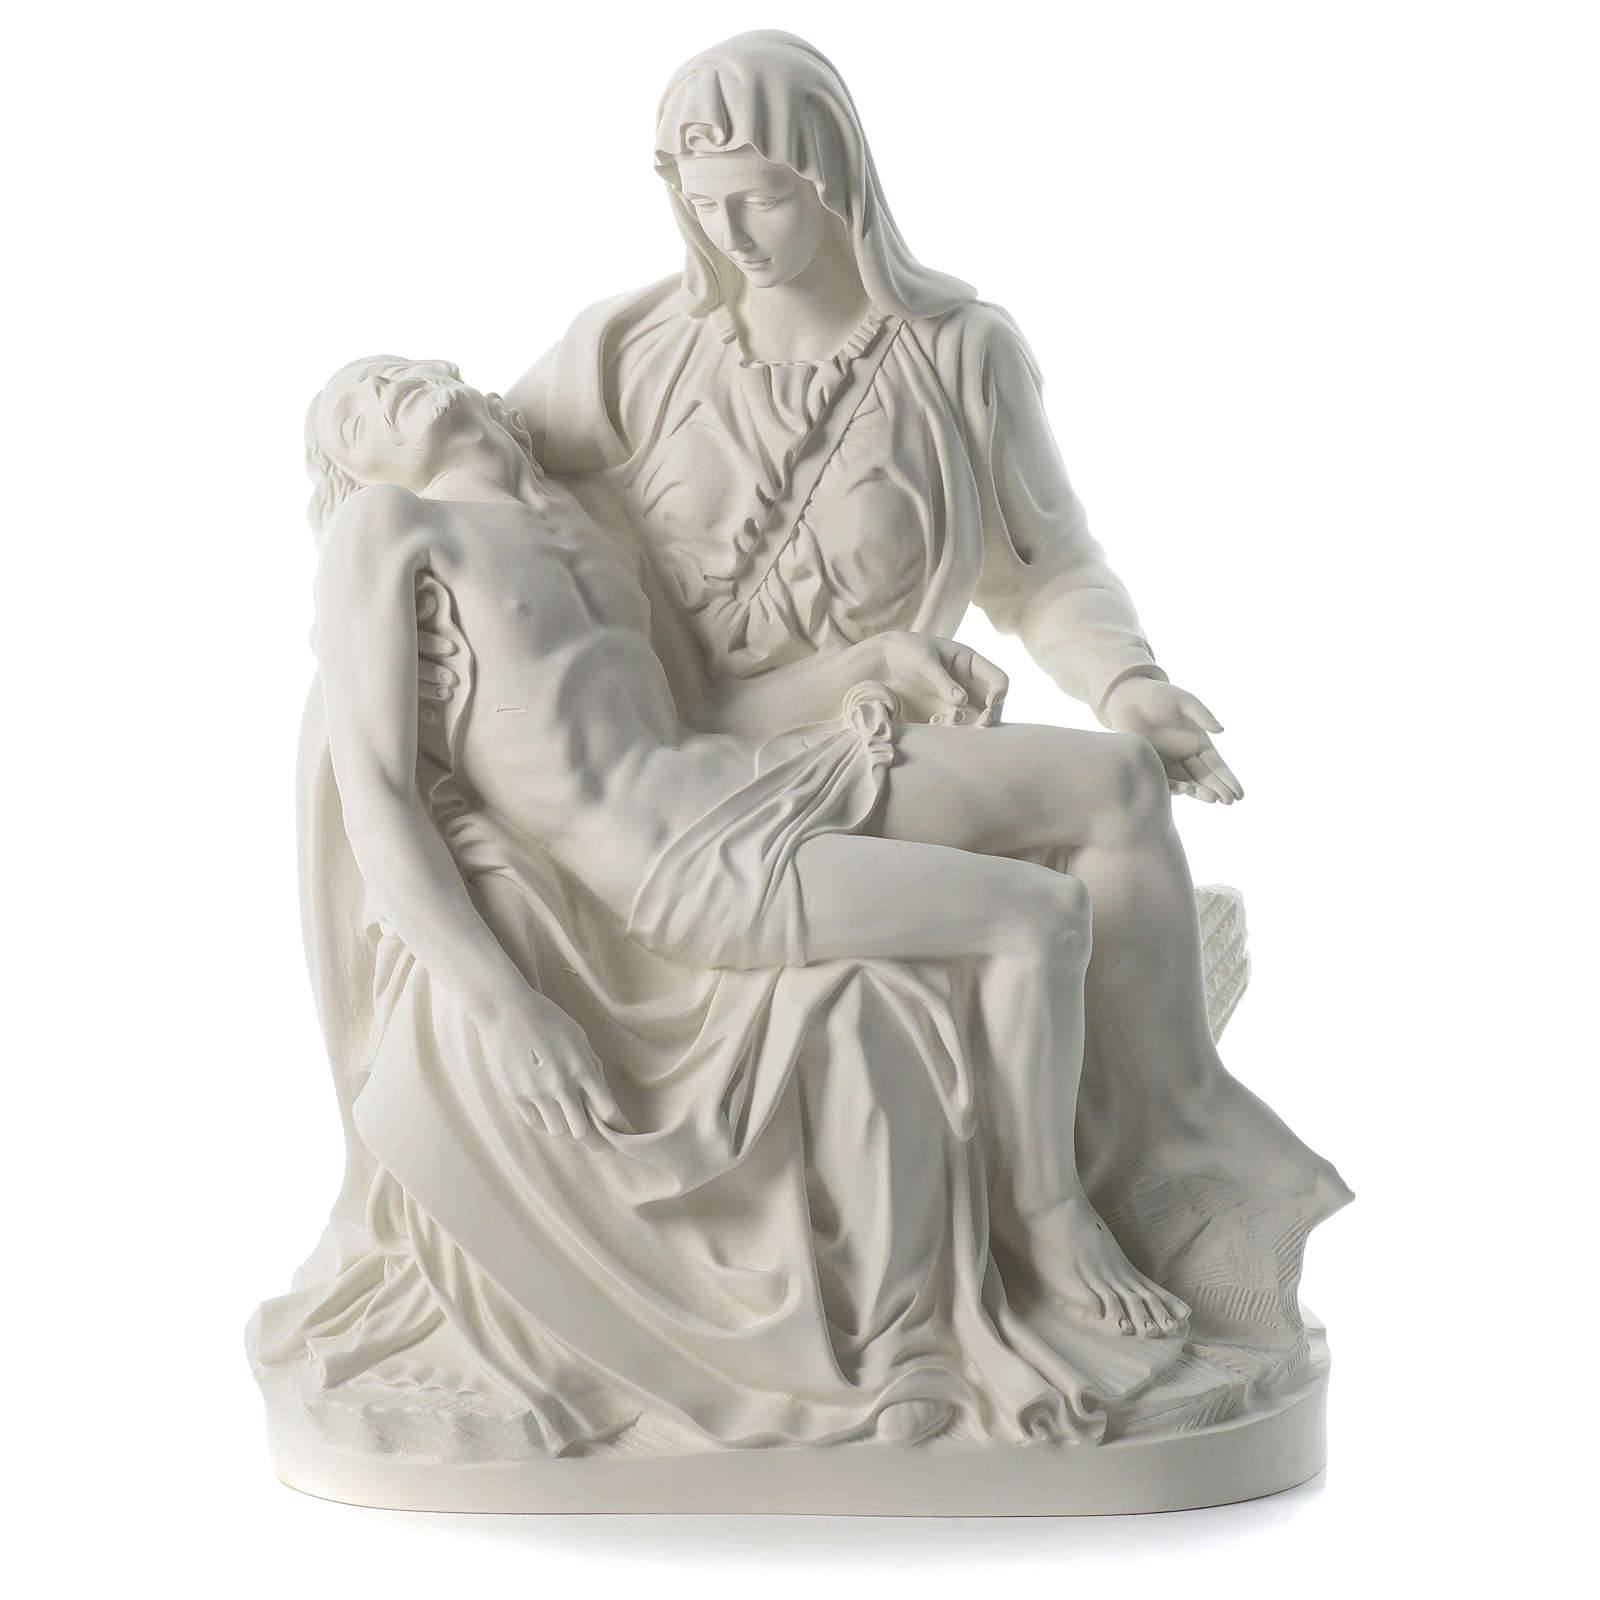 Marmor najboljše kakovosti – ročno izrezljani kipi svete družine iz verskega belega marmorja Pieta v zahodnem slogu naprodaj – Atisan Works